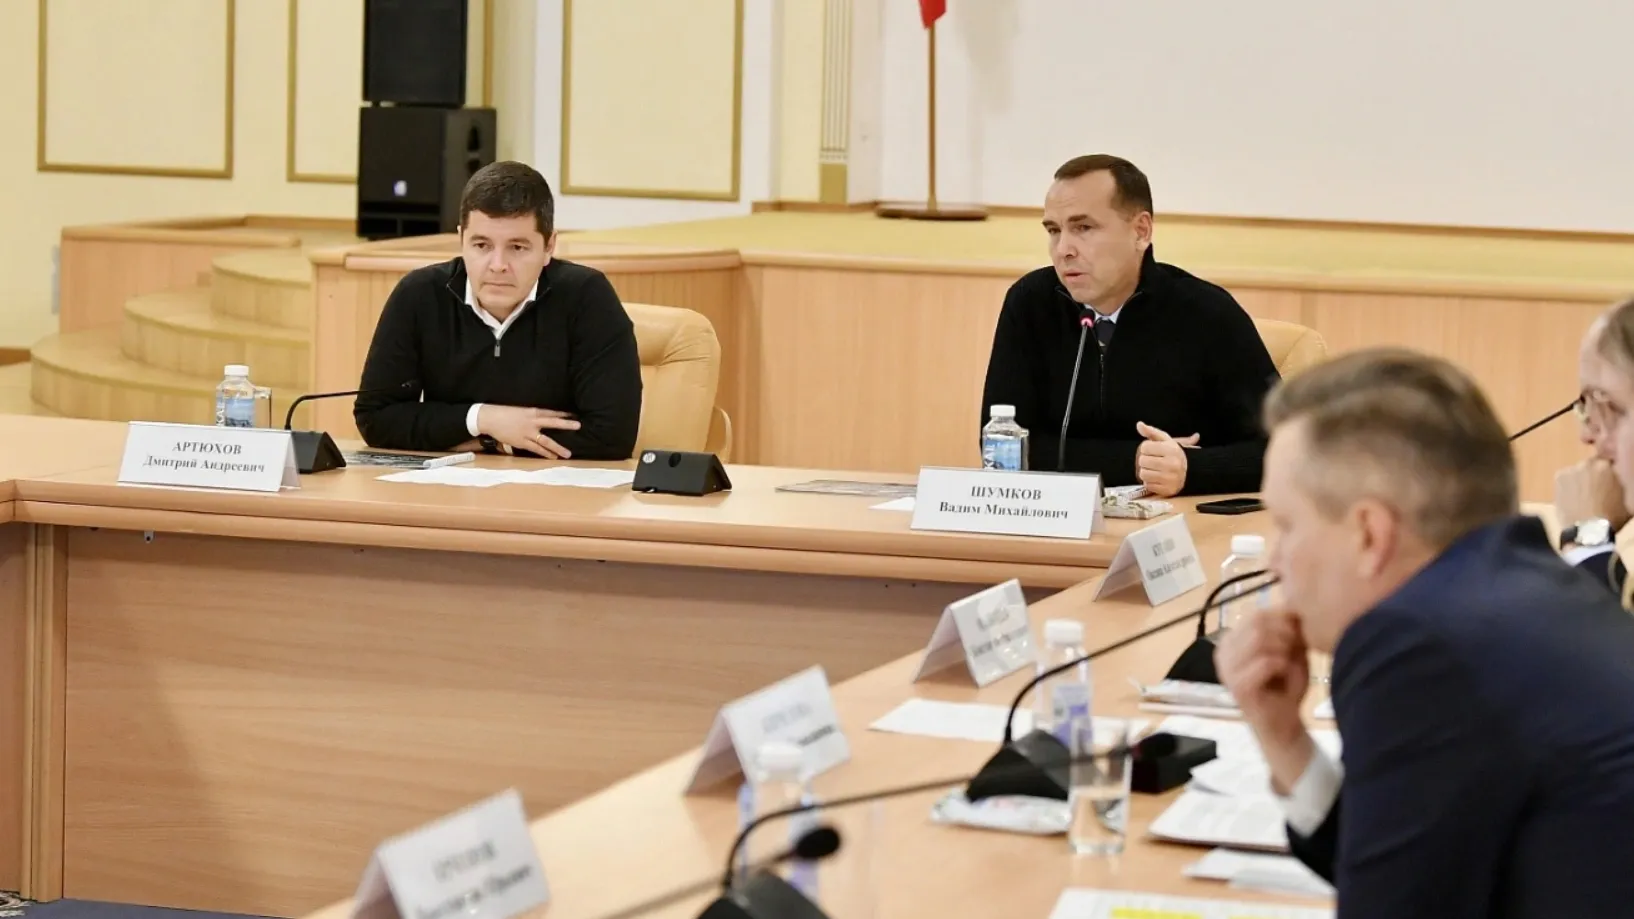 Совещание под руководством Артюхова и Шумкова. Фото предоставлено пресс-службой губернатора ЯНАО